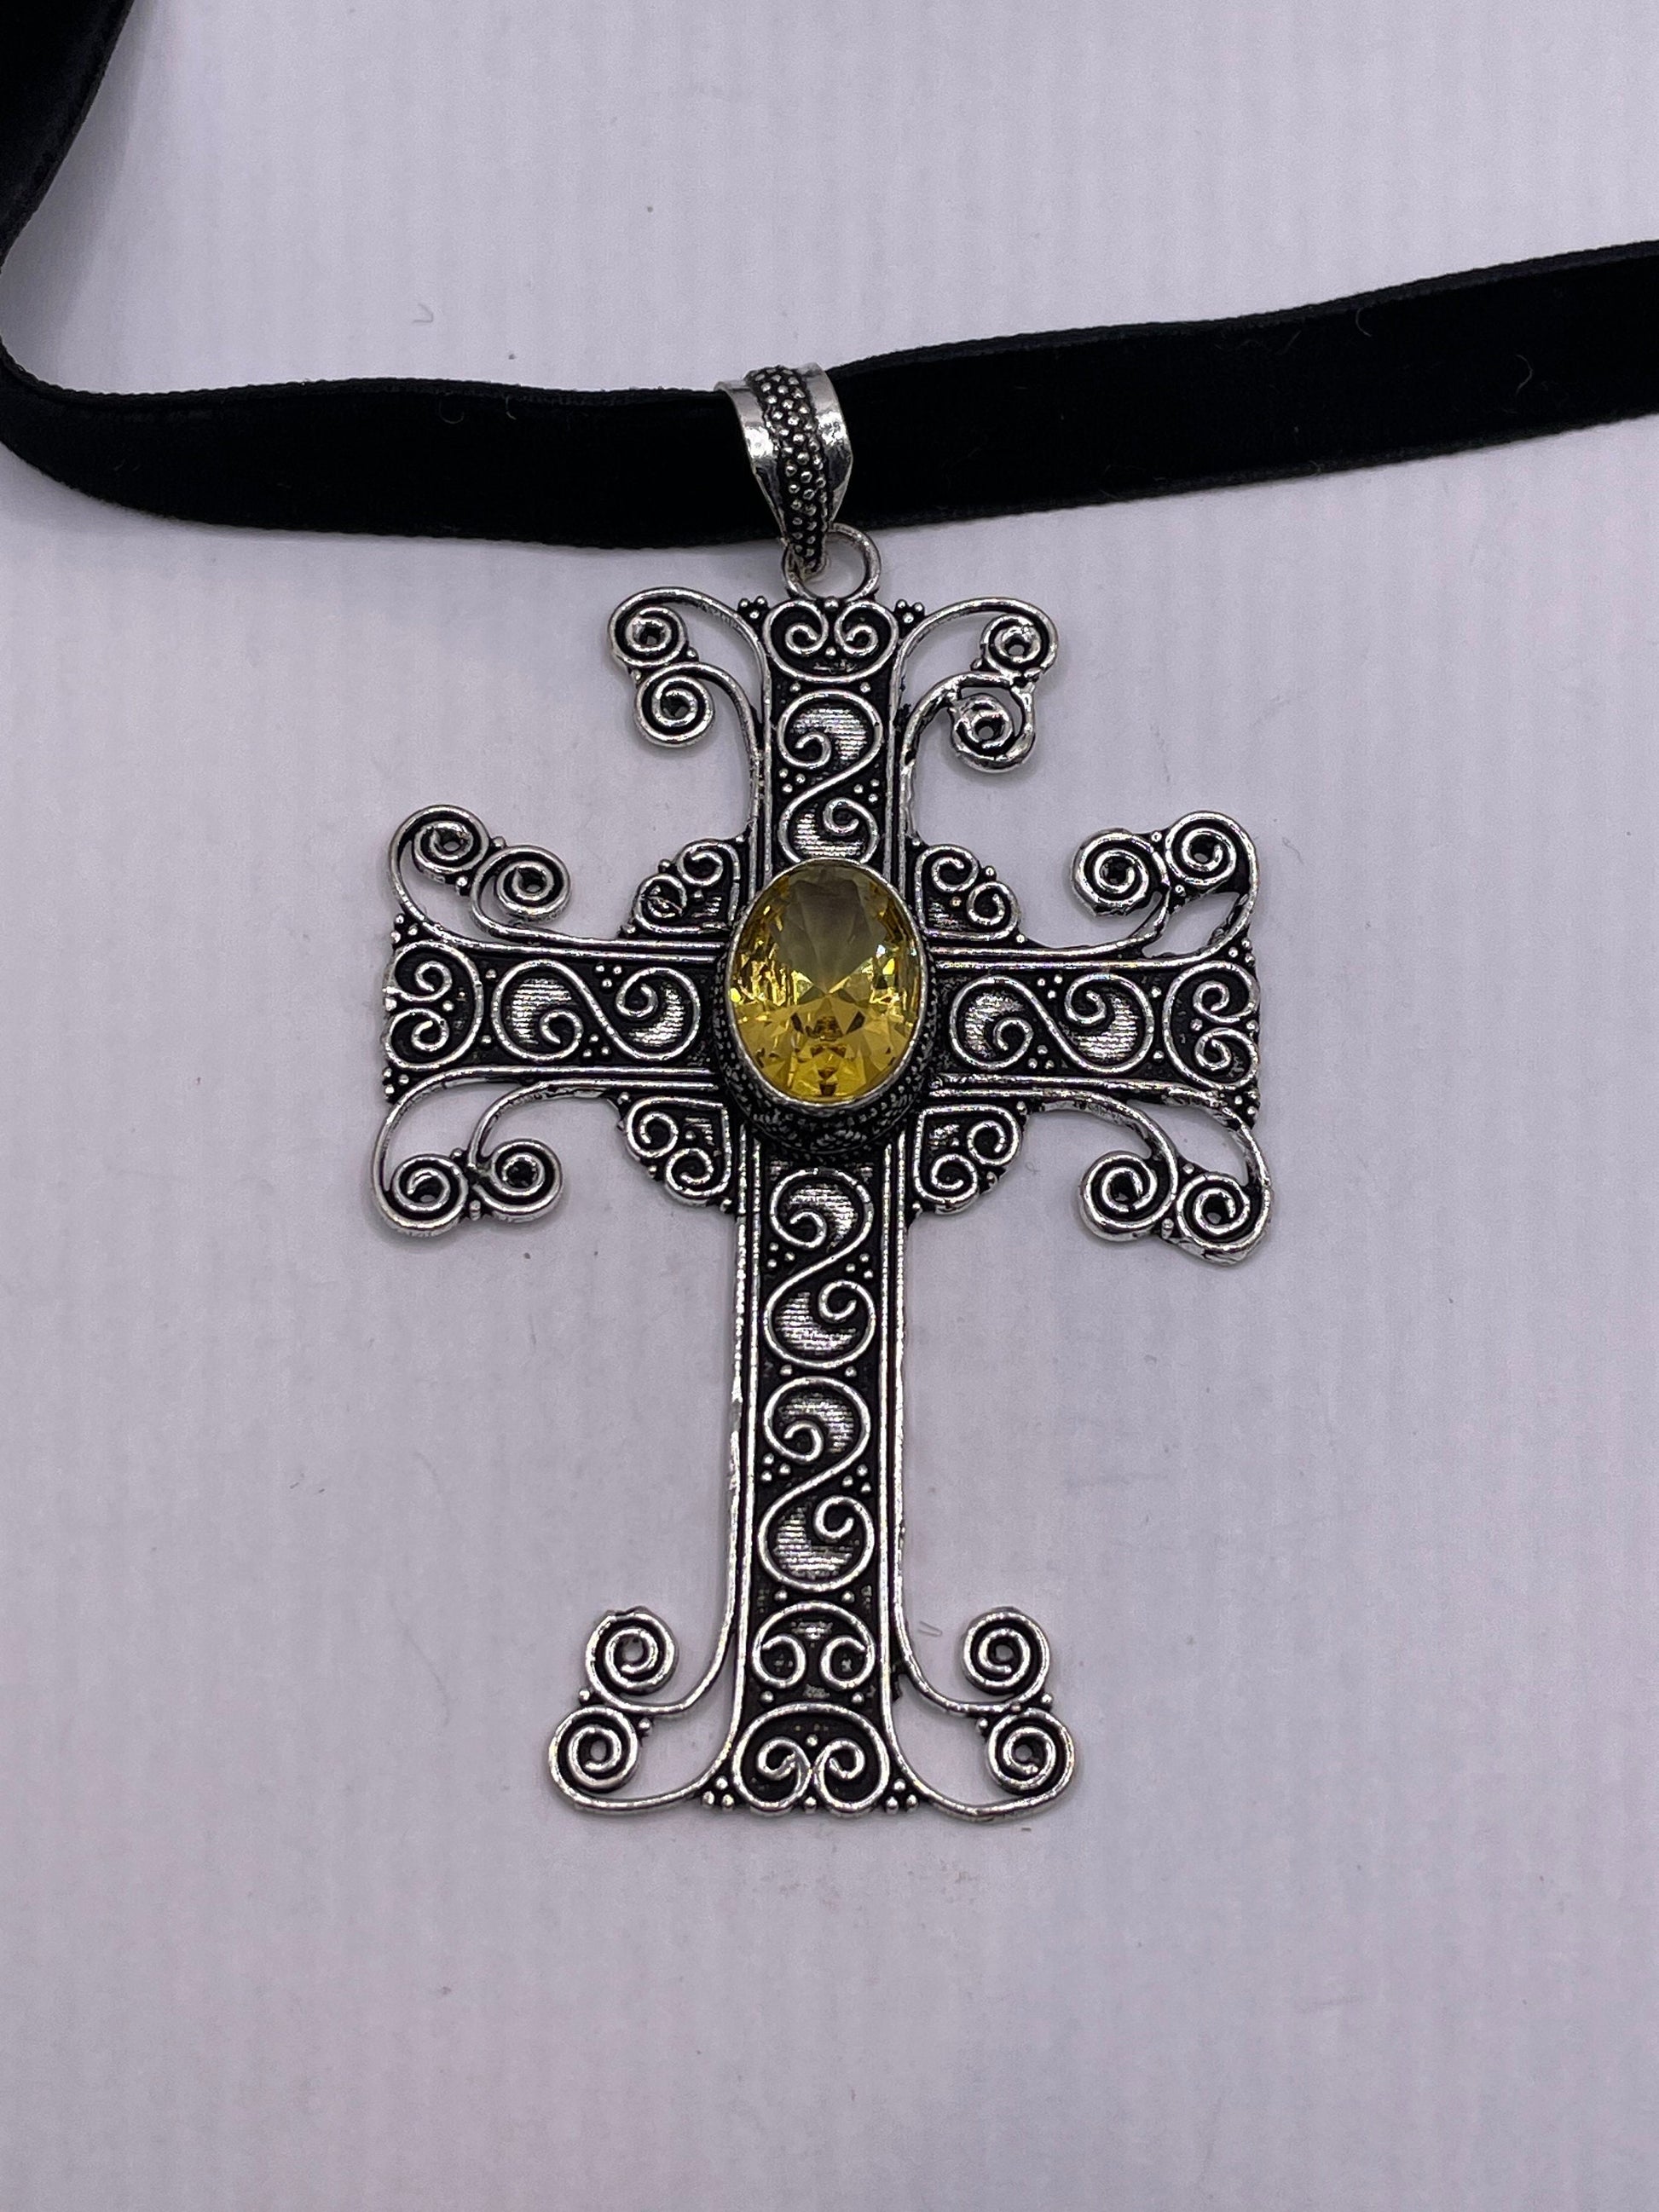 Vintage Silver Golden Citrine Cross Choker Black Velvet Necklace.